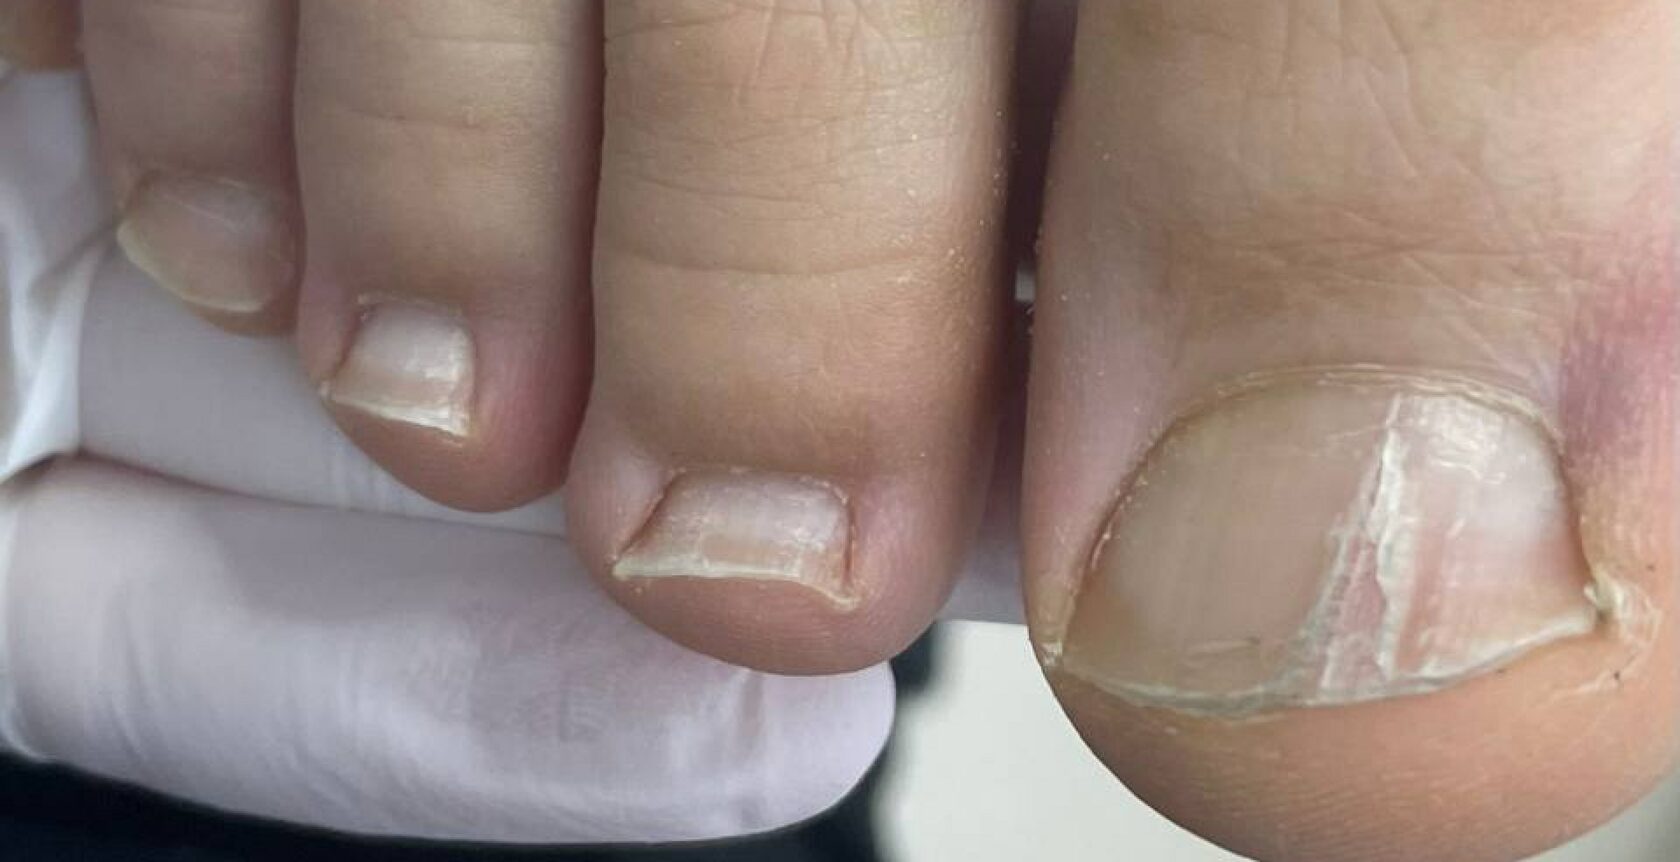 Ониходистрофия (дистрофия ногтей) - причины и лечение